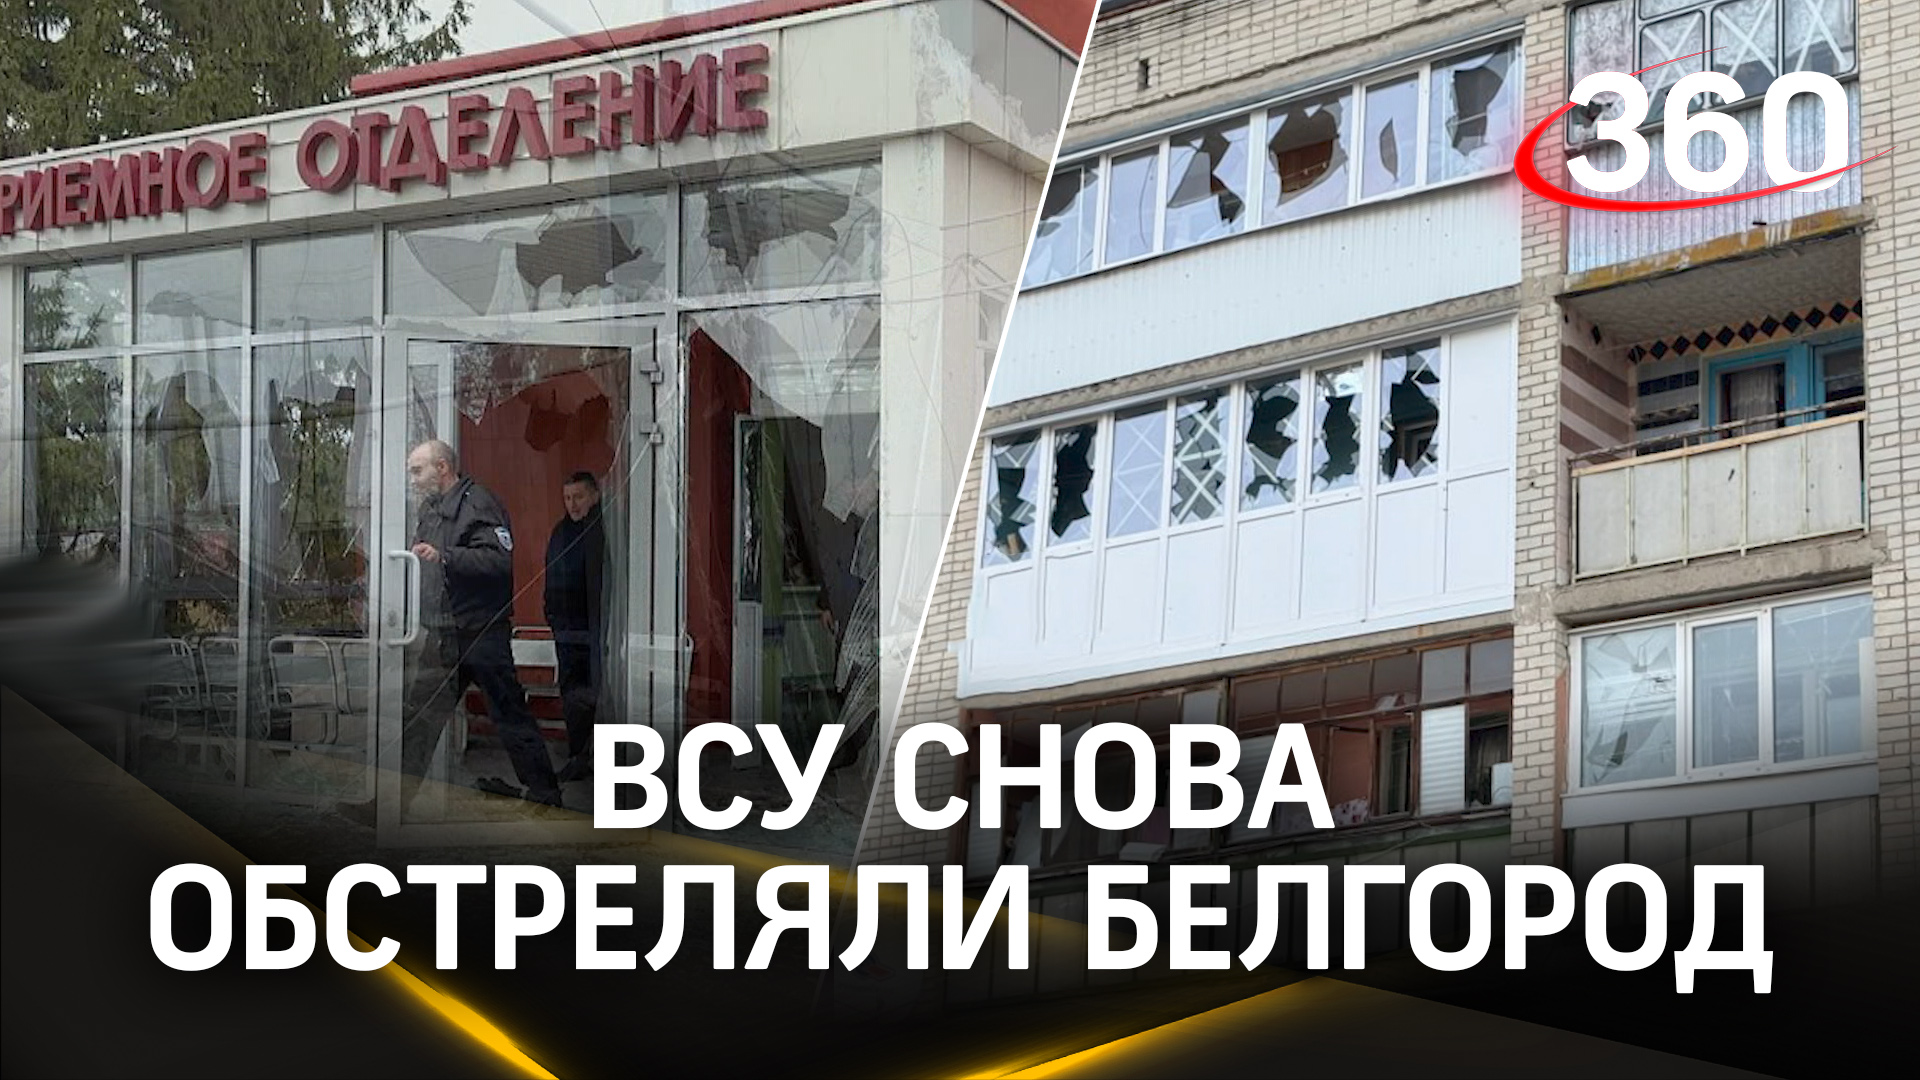 Пять человек пострадали при обстреле ВСУ Белгородской области – Гладков